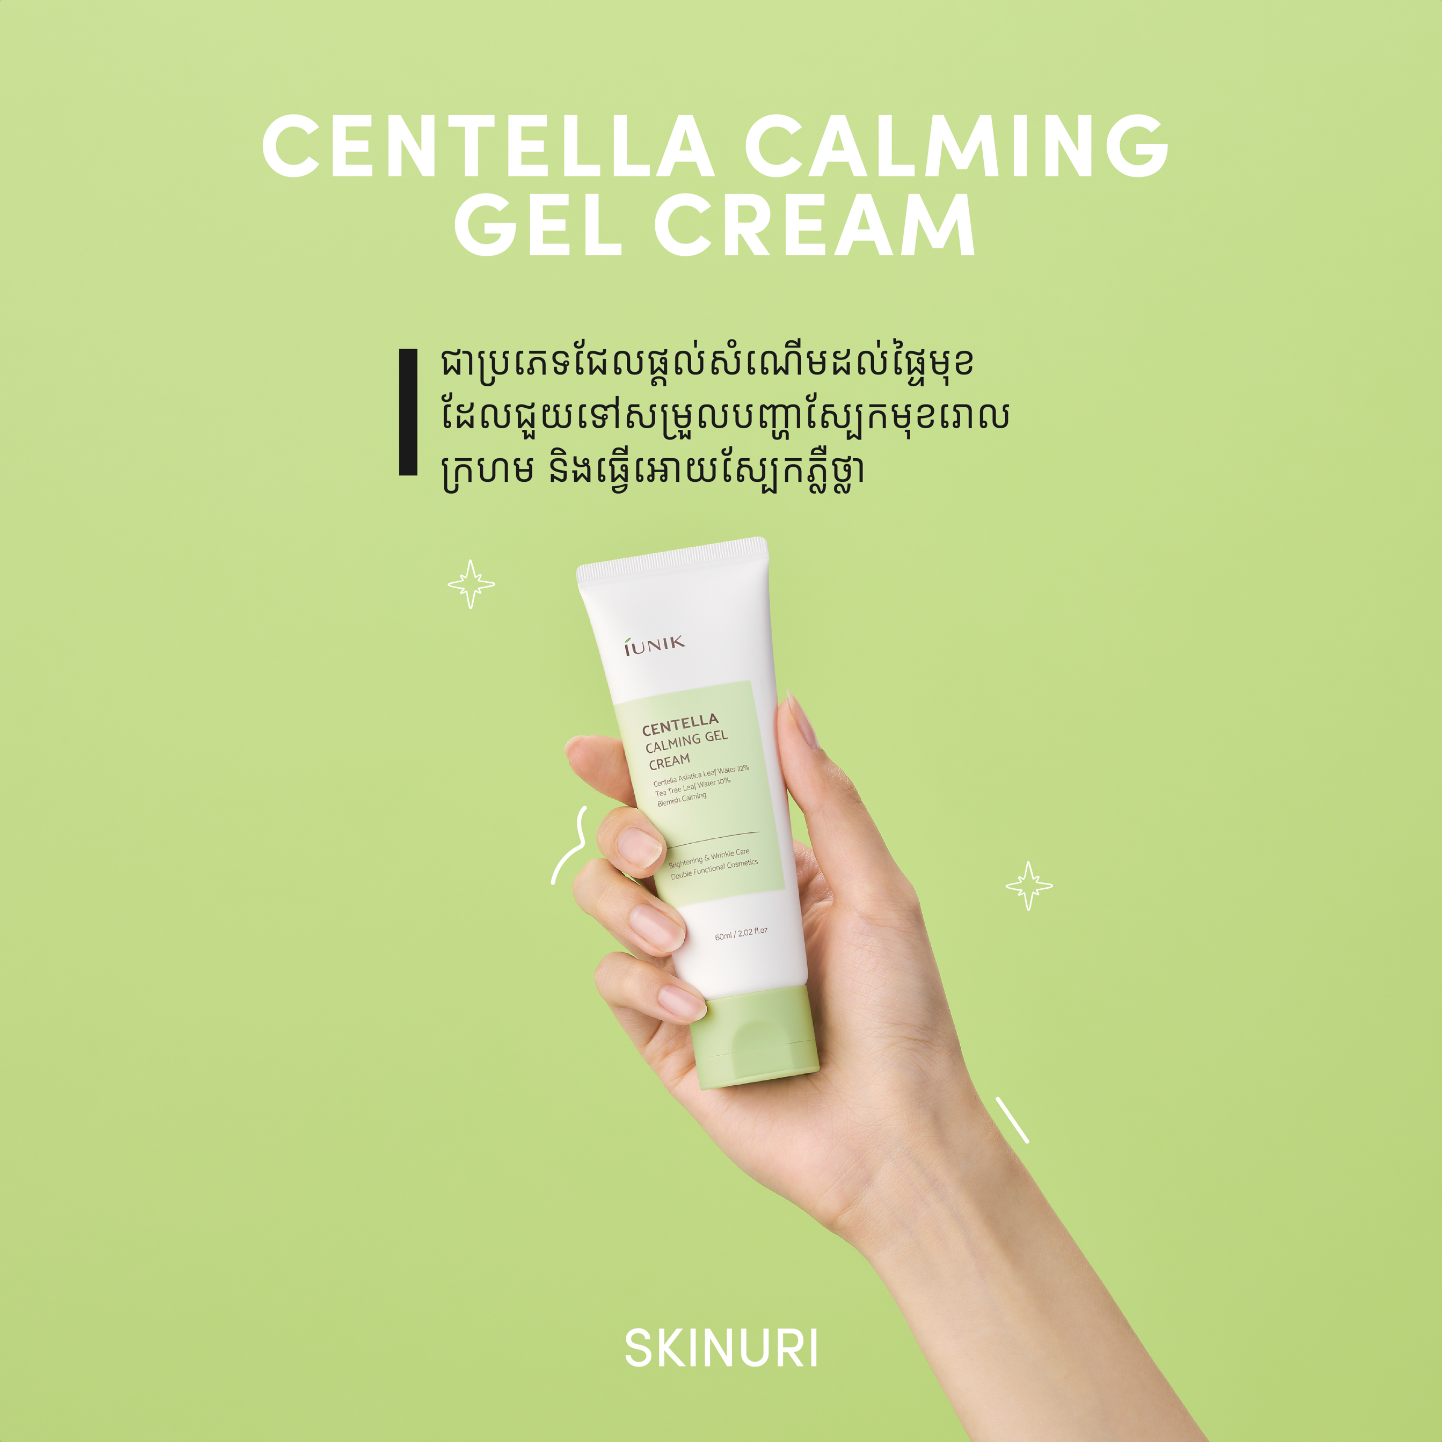 IUNIK Centella Calming Gel Cream